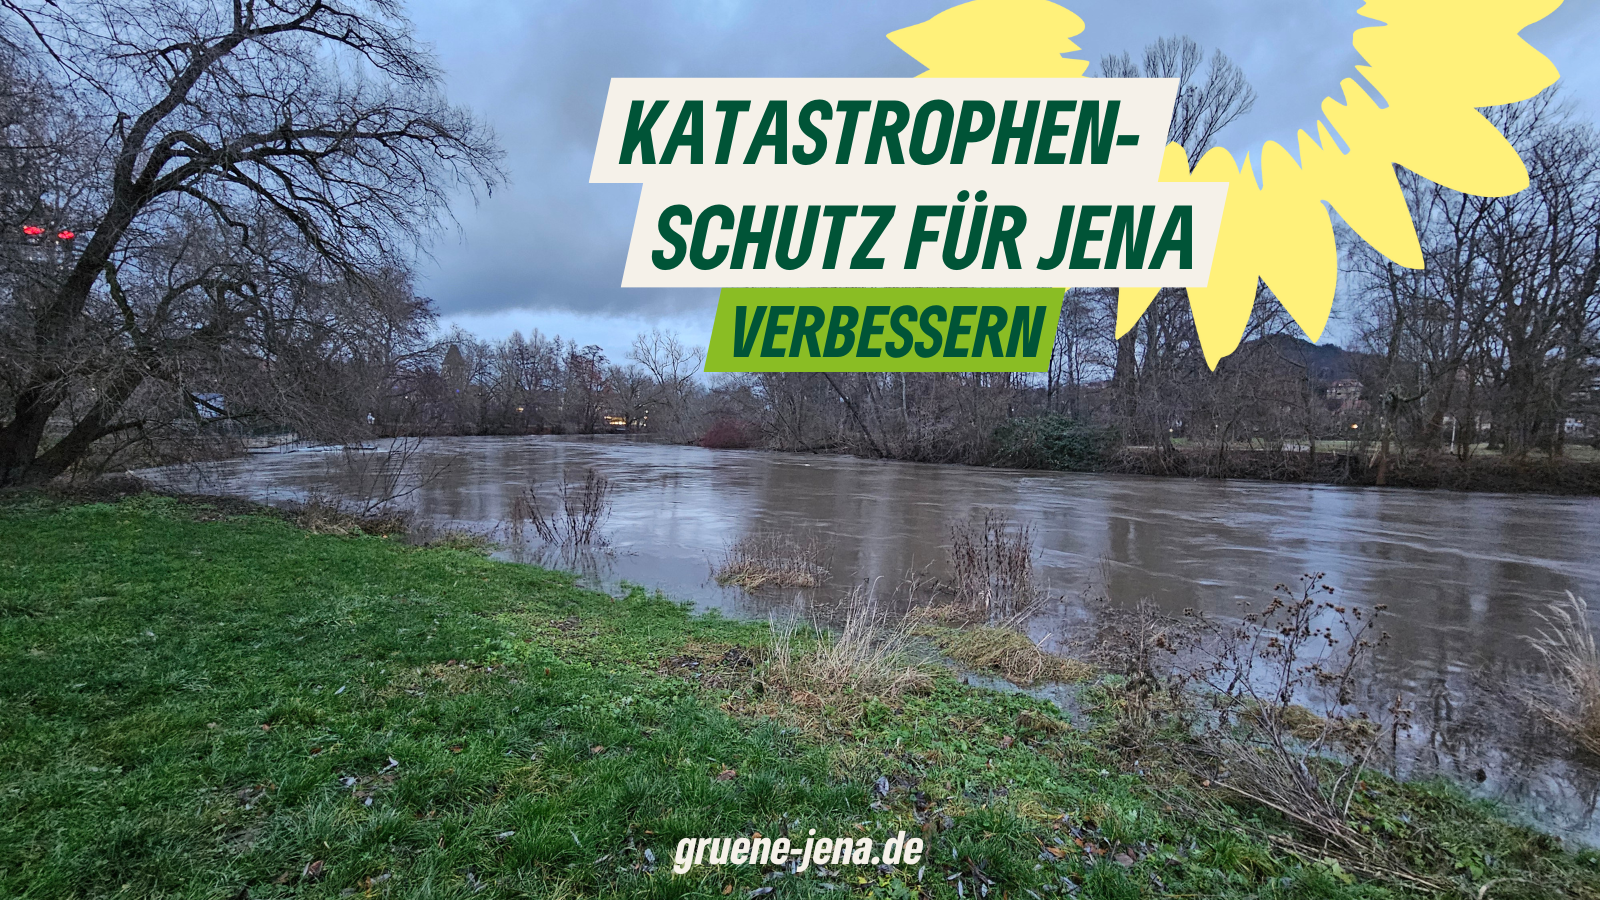 Hintergrund: Bild der Saale, die einen sehr hohen Wasserstand hat. Blick in Richtung Jentower im Paradies. Text: Katastrophenschutz für Jena verbessern